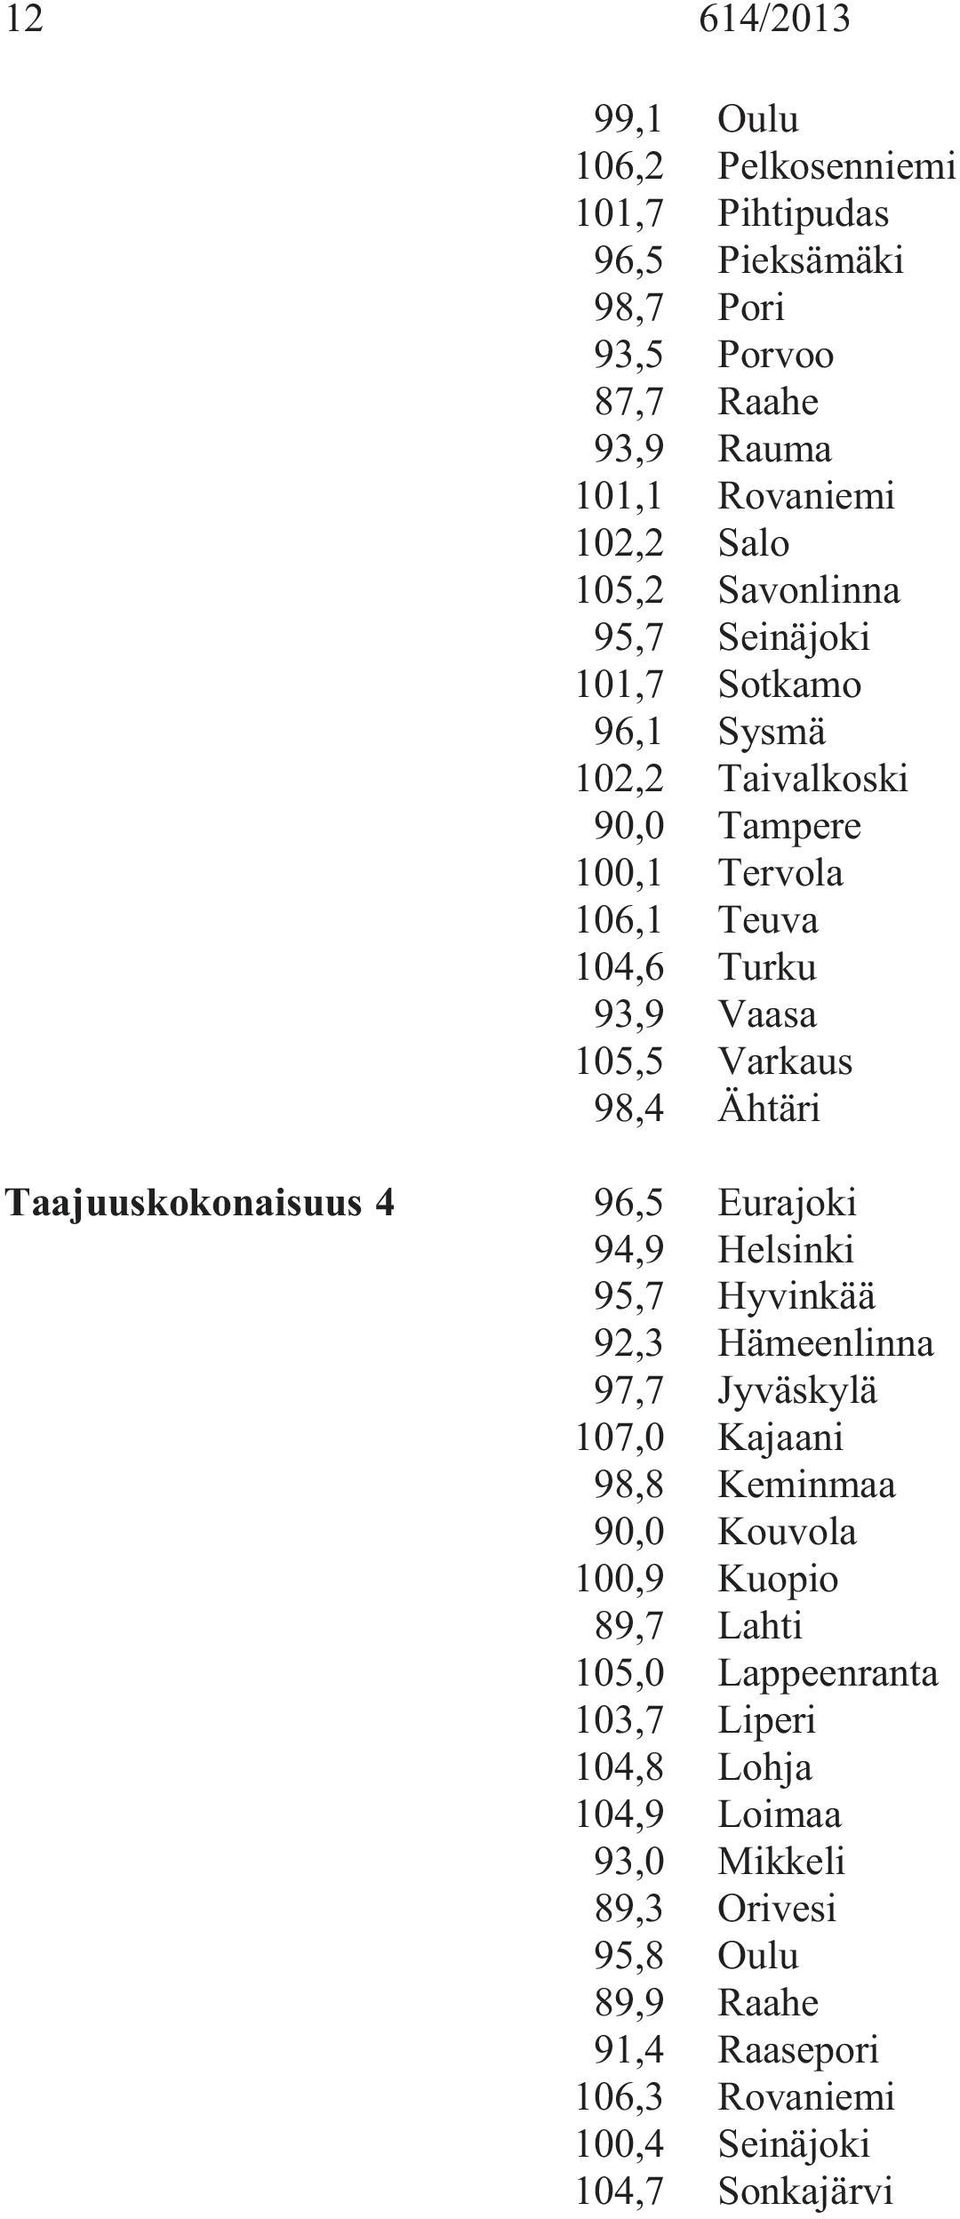 Taajuuskokonaisuus 4 96,5 Eurajoki 94,9 Helsinki 95,7 Hyvinkää 92,3 Hämeenlinna 97,7 Jyväskylä 107,0 Kajaani 98,8 Keminmaa 90,0 Kouvola 100,9 Kuopio 89,7